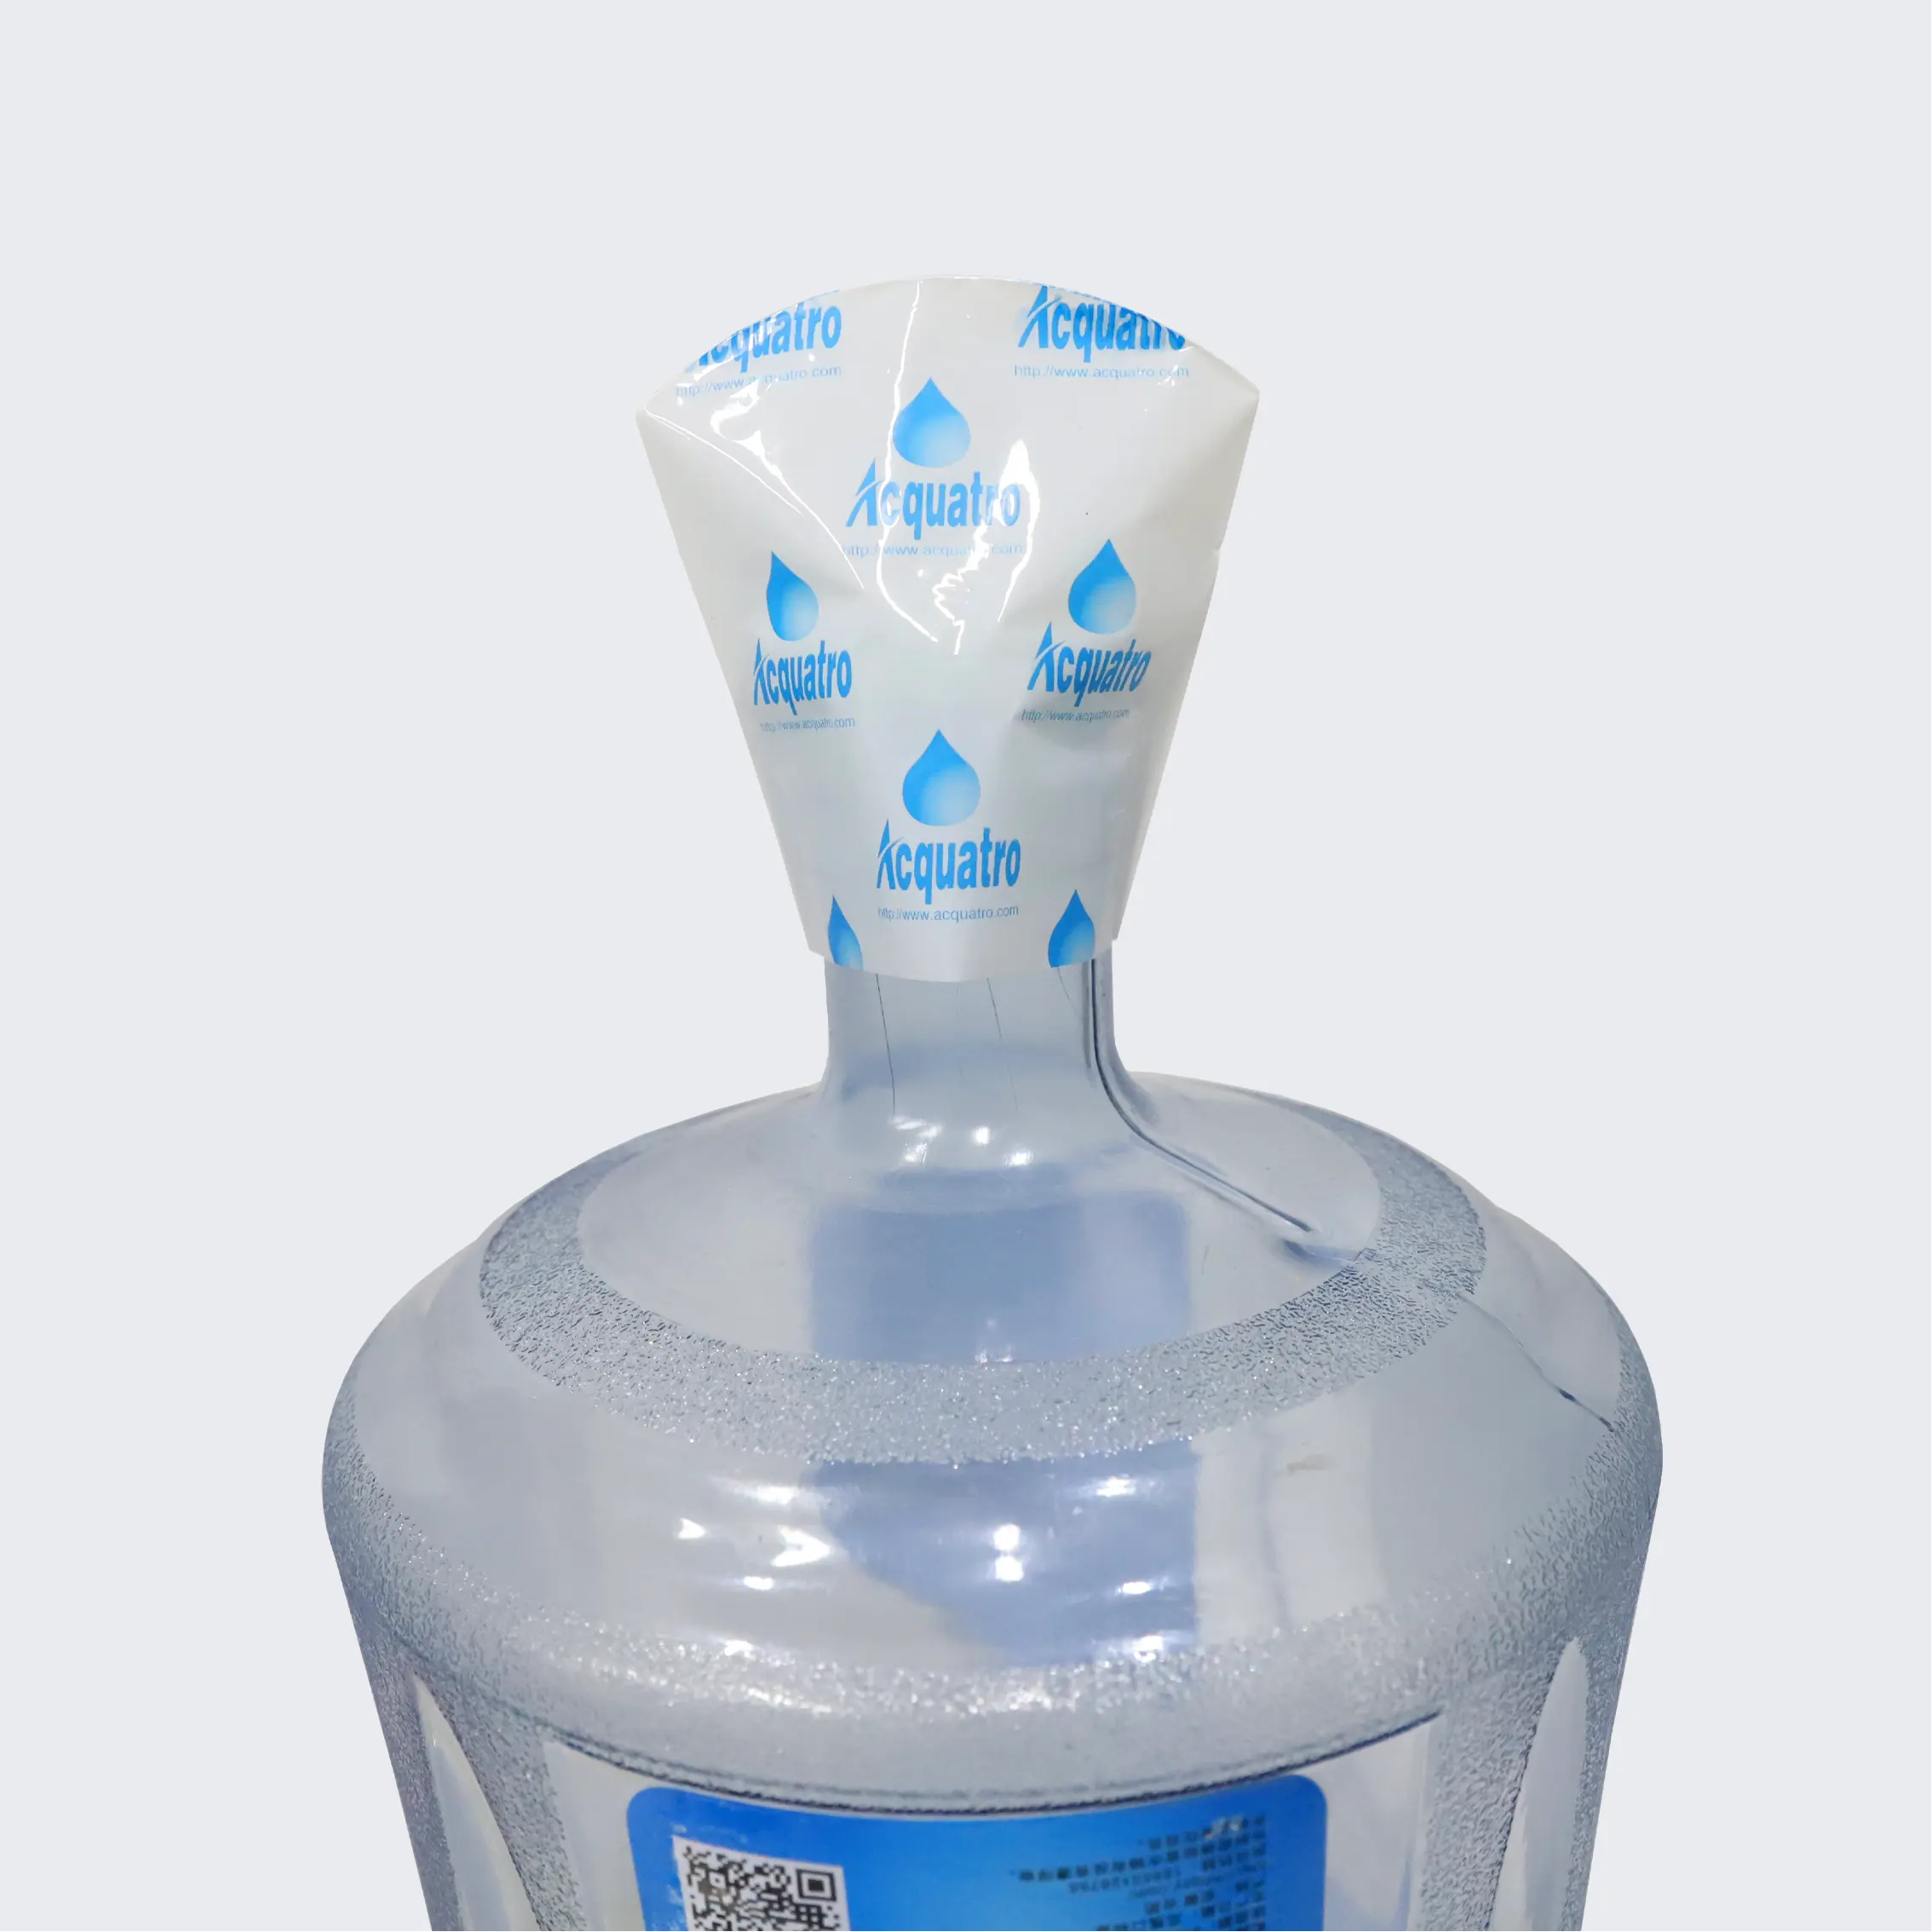 Thu nhỏ con dấu thu nhỏ tay áo bọc mẫu miễn phí nhựa co ngót cho 5 gallon Nắp ô con dấu PVC chai nước in ống đồng